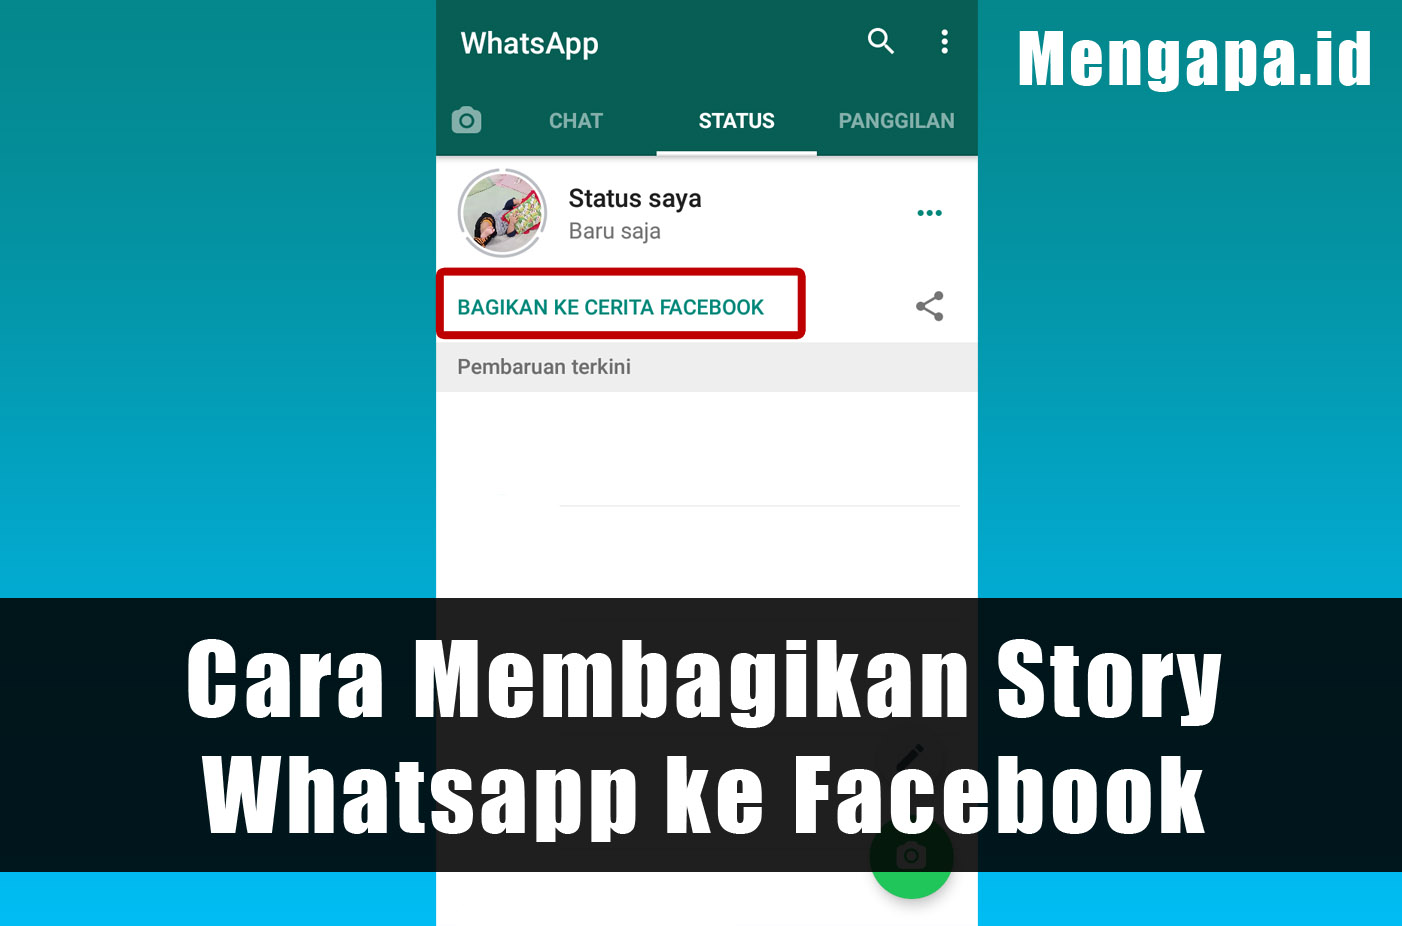 Cara Membagikan Story Whatsapp ke Facebook